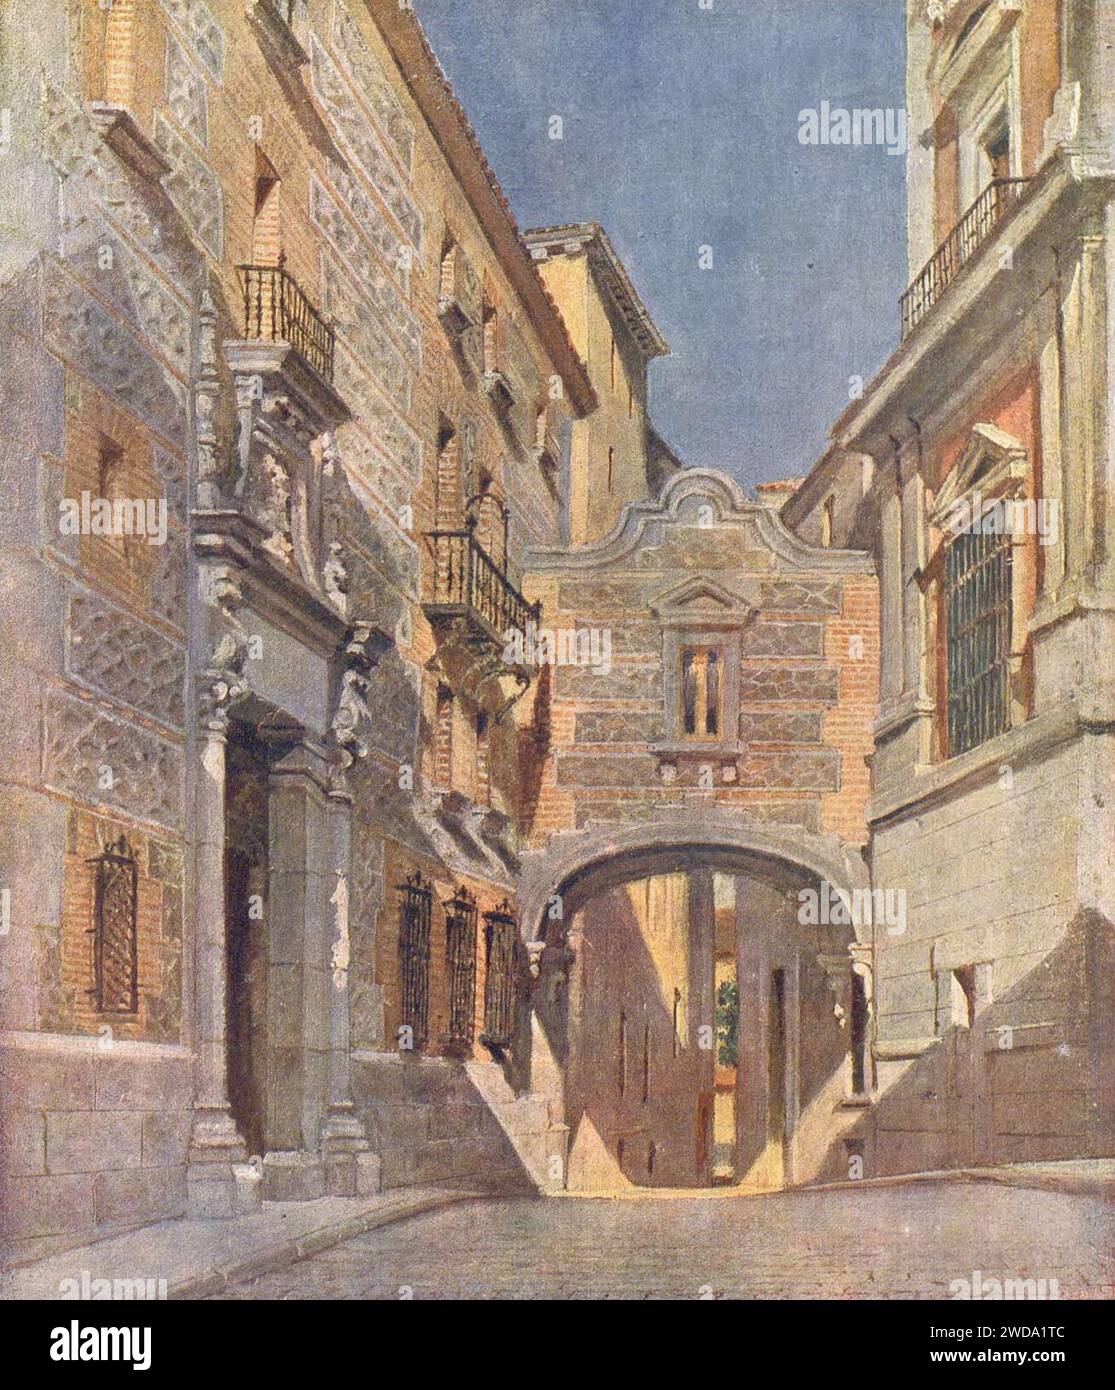 1918-10-19 La Esfera, La casa de Cisneros, en la plaza de la Villa, acuarela de Muñoz Morillejo (cropped). Stock Photo